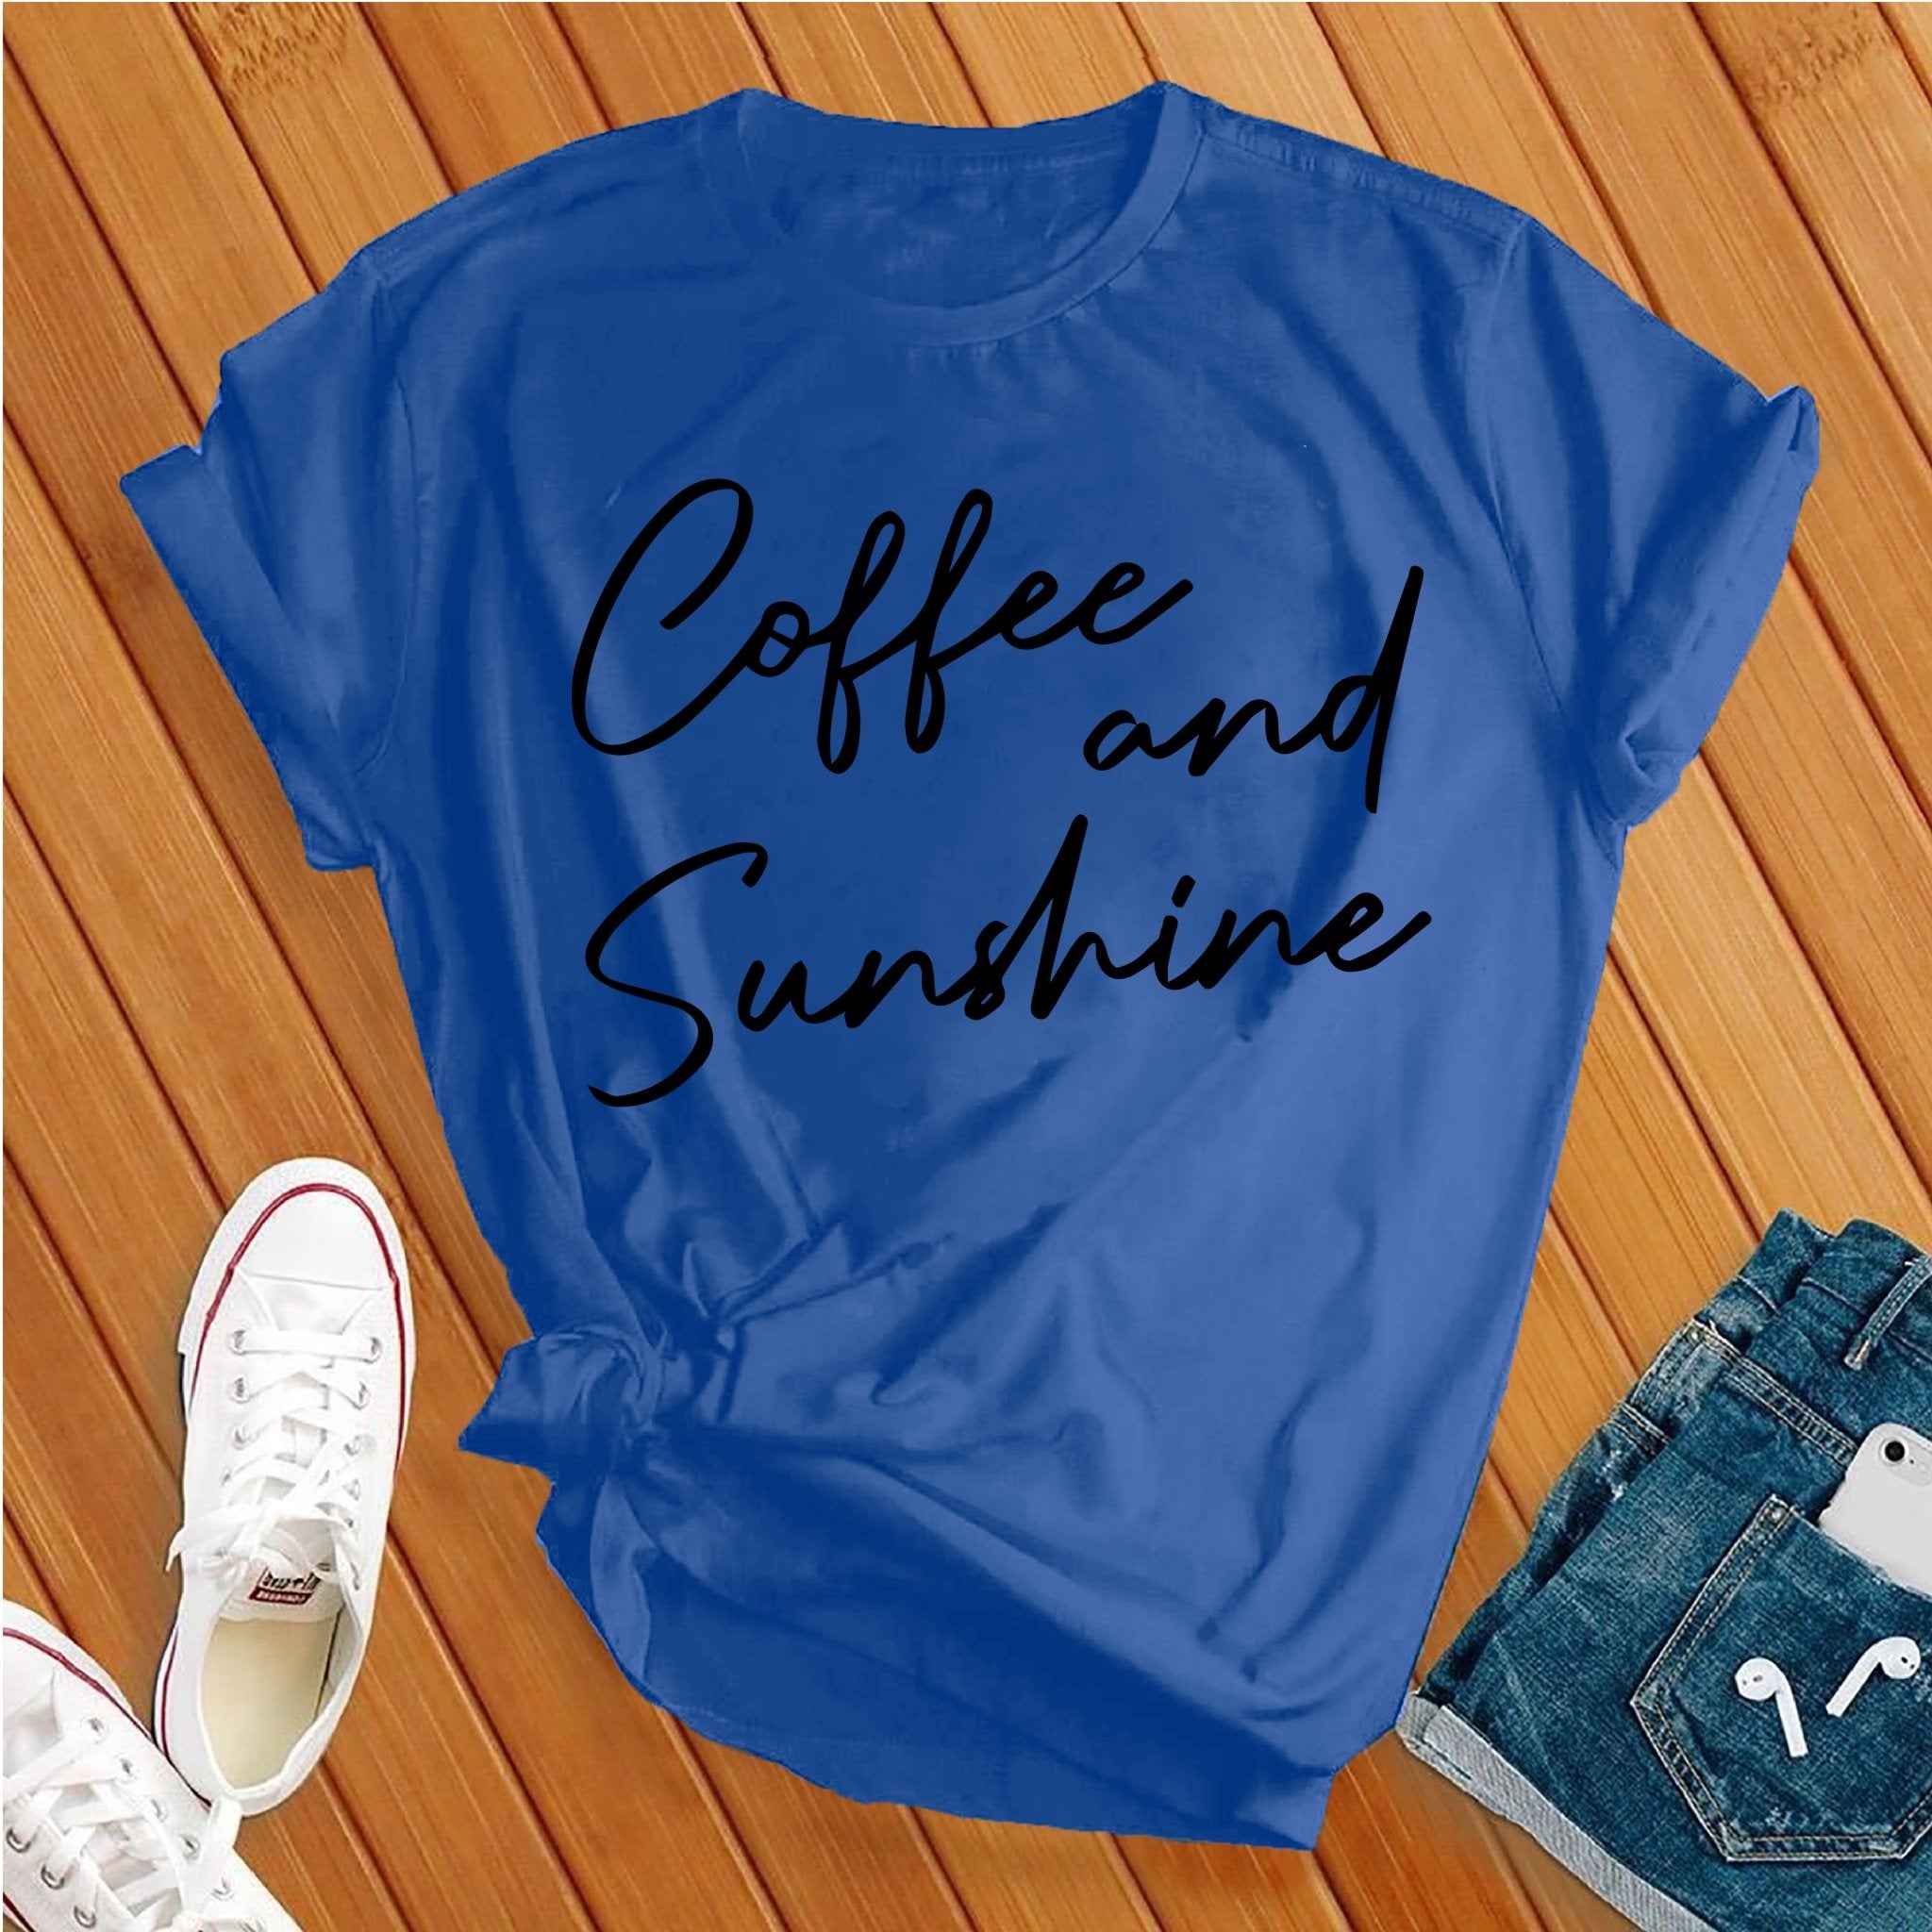 Coffee and Sunshine Tee - Love Tees